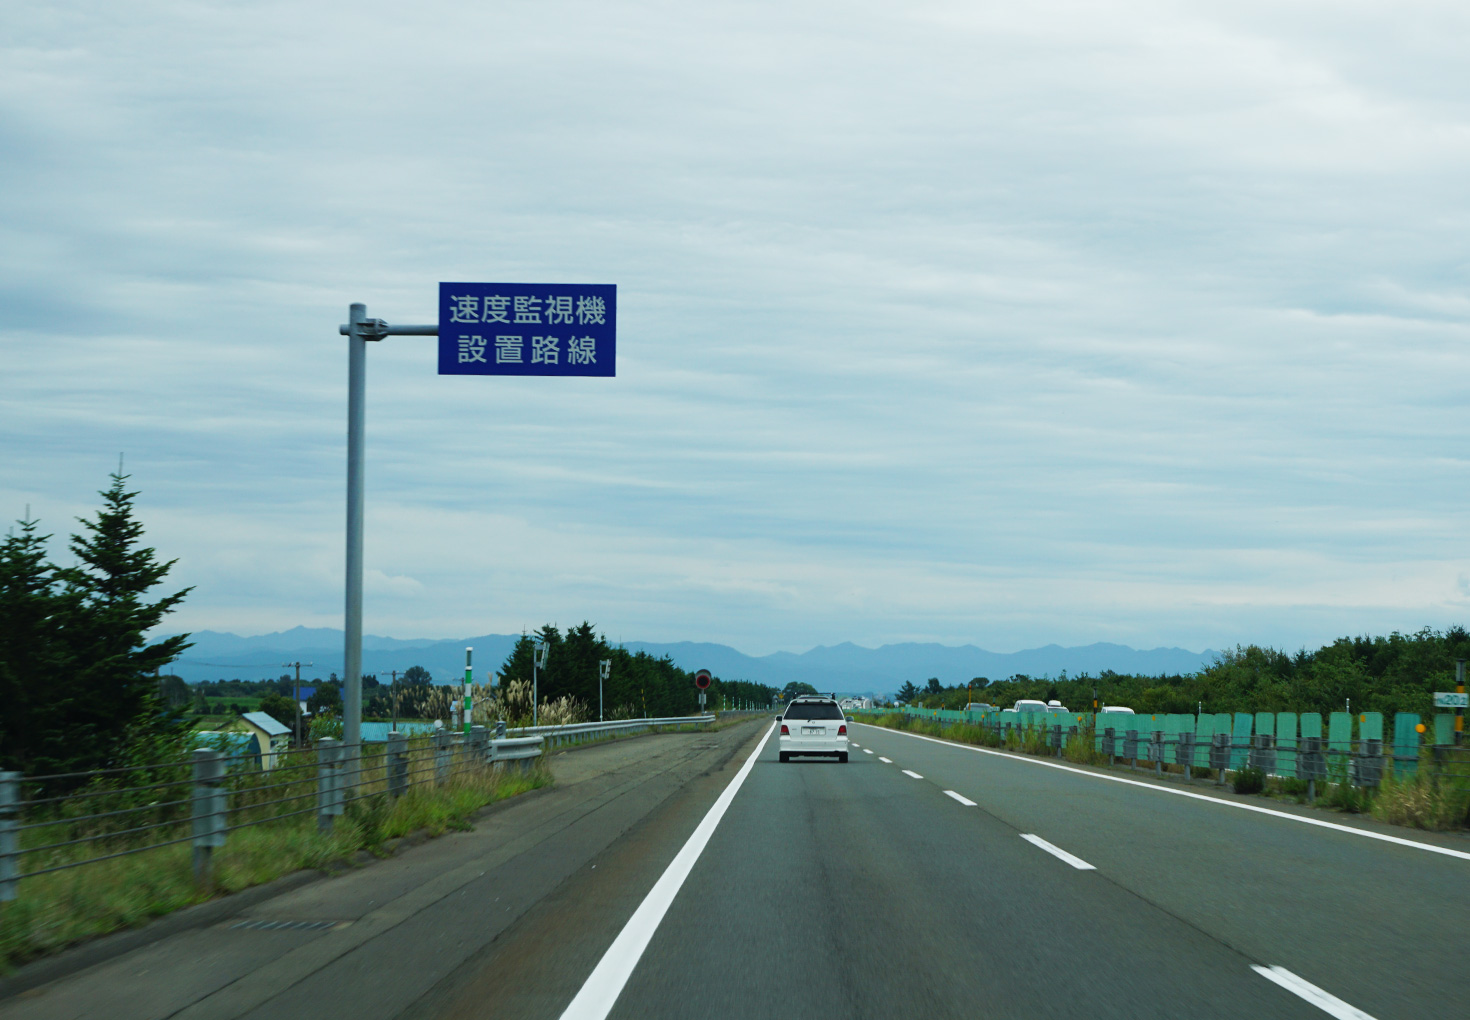 北海道の高速道路上のオービス 北海道 キャンプ ツーリング情報局 21